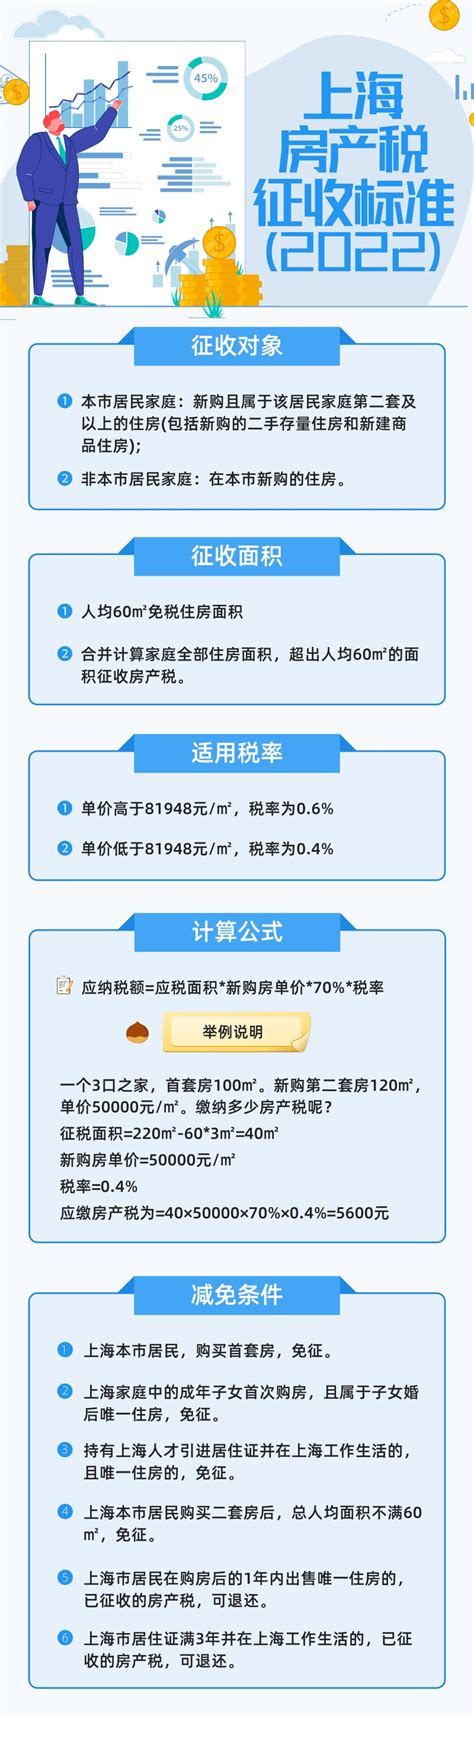 一图看懂2022年上海房产税征收新标准_房产资讯_房天下